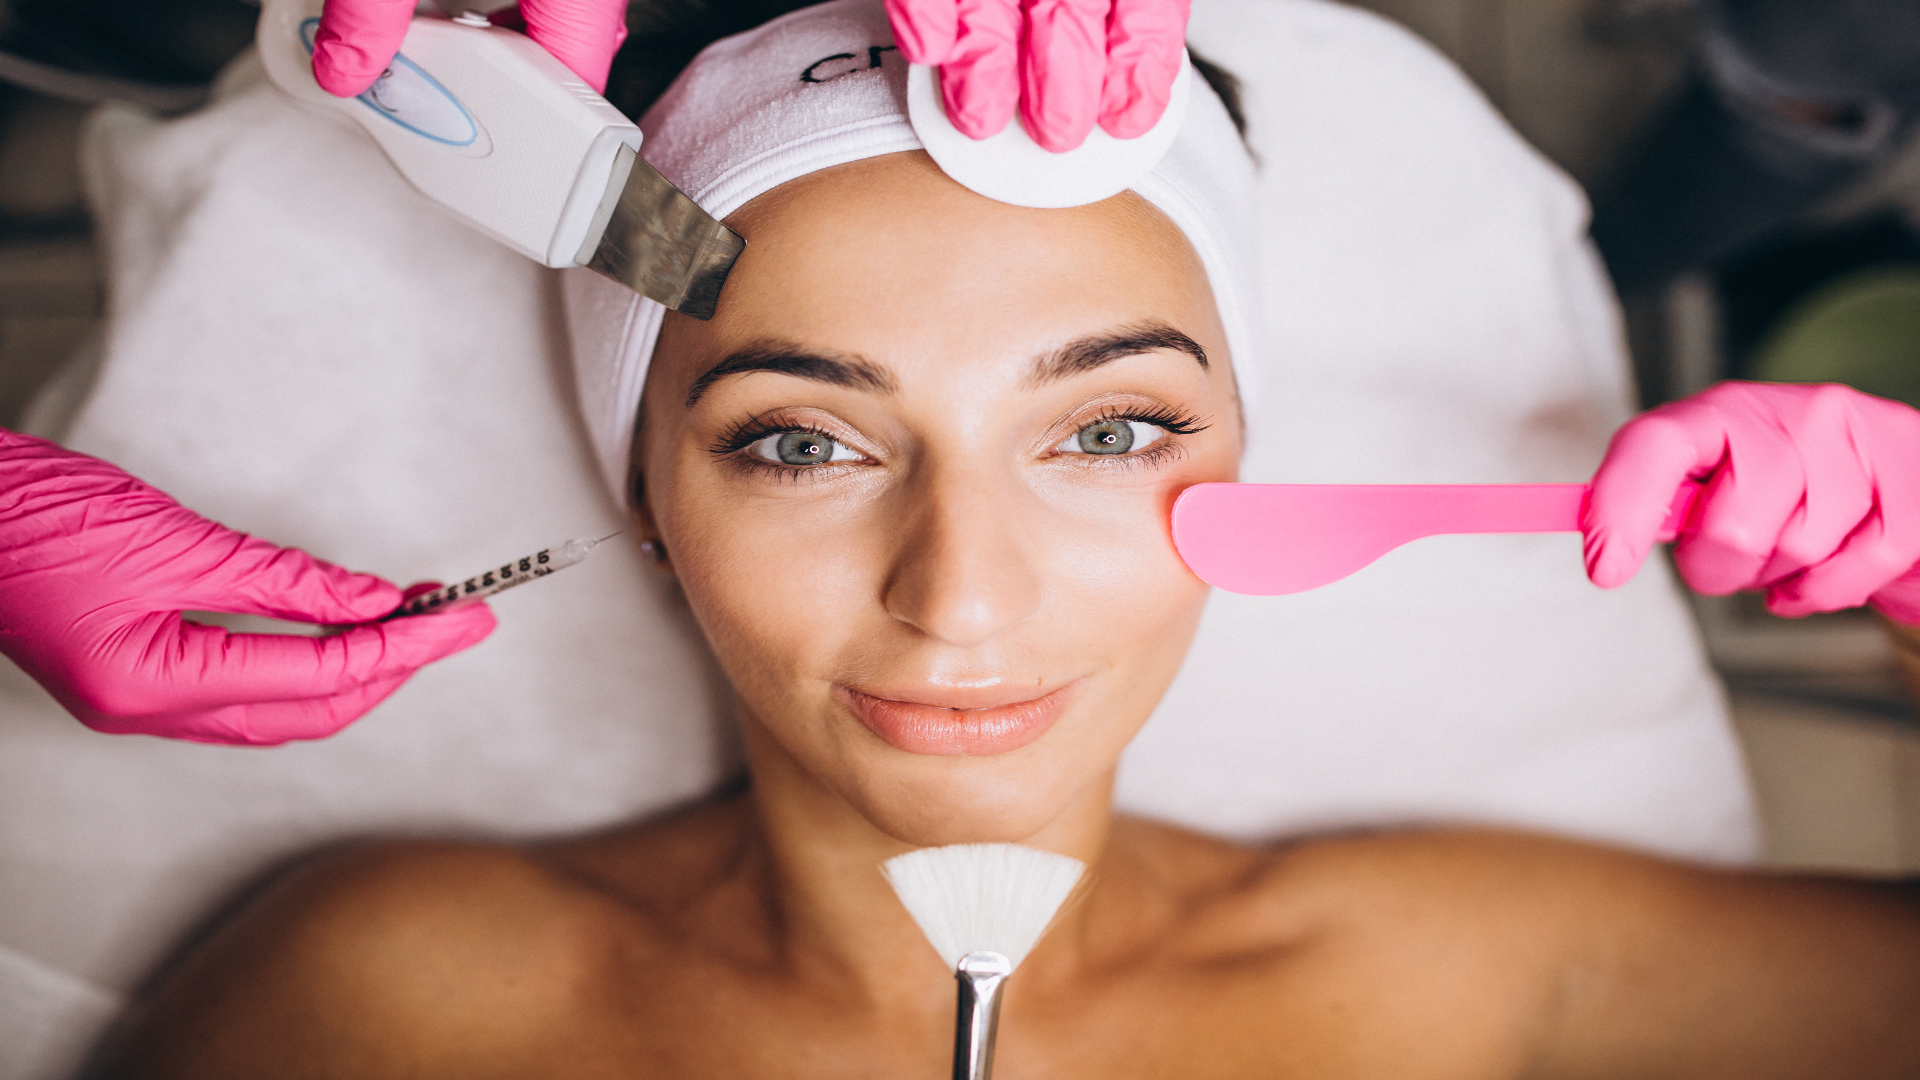 Foto de capa do artigo "Limpeza de pele: benefícios, onde e quando fazer"